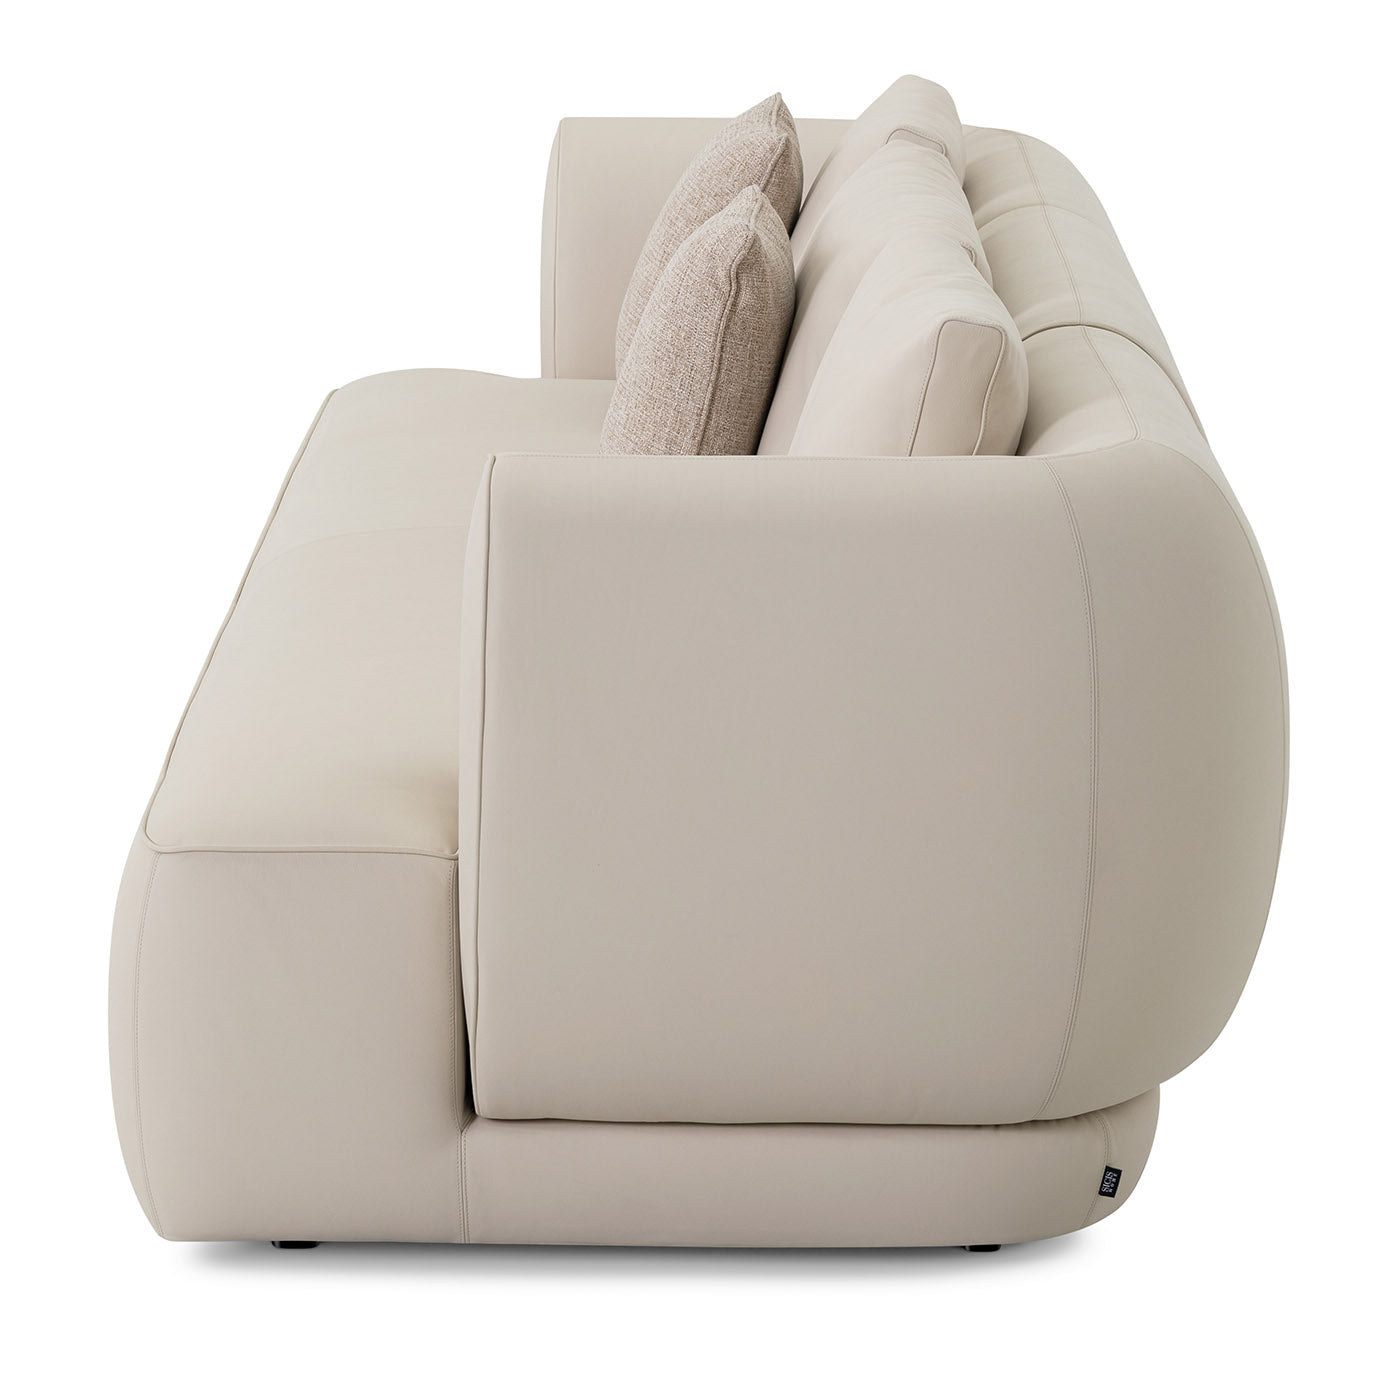 Botero 4-Seat Sofa - Alternative view 1